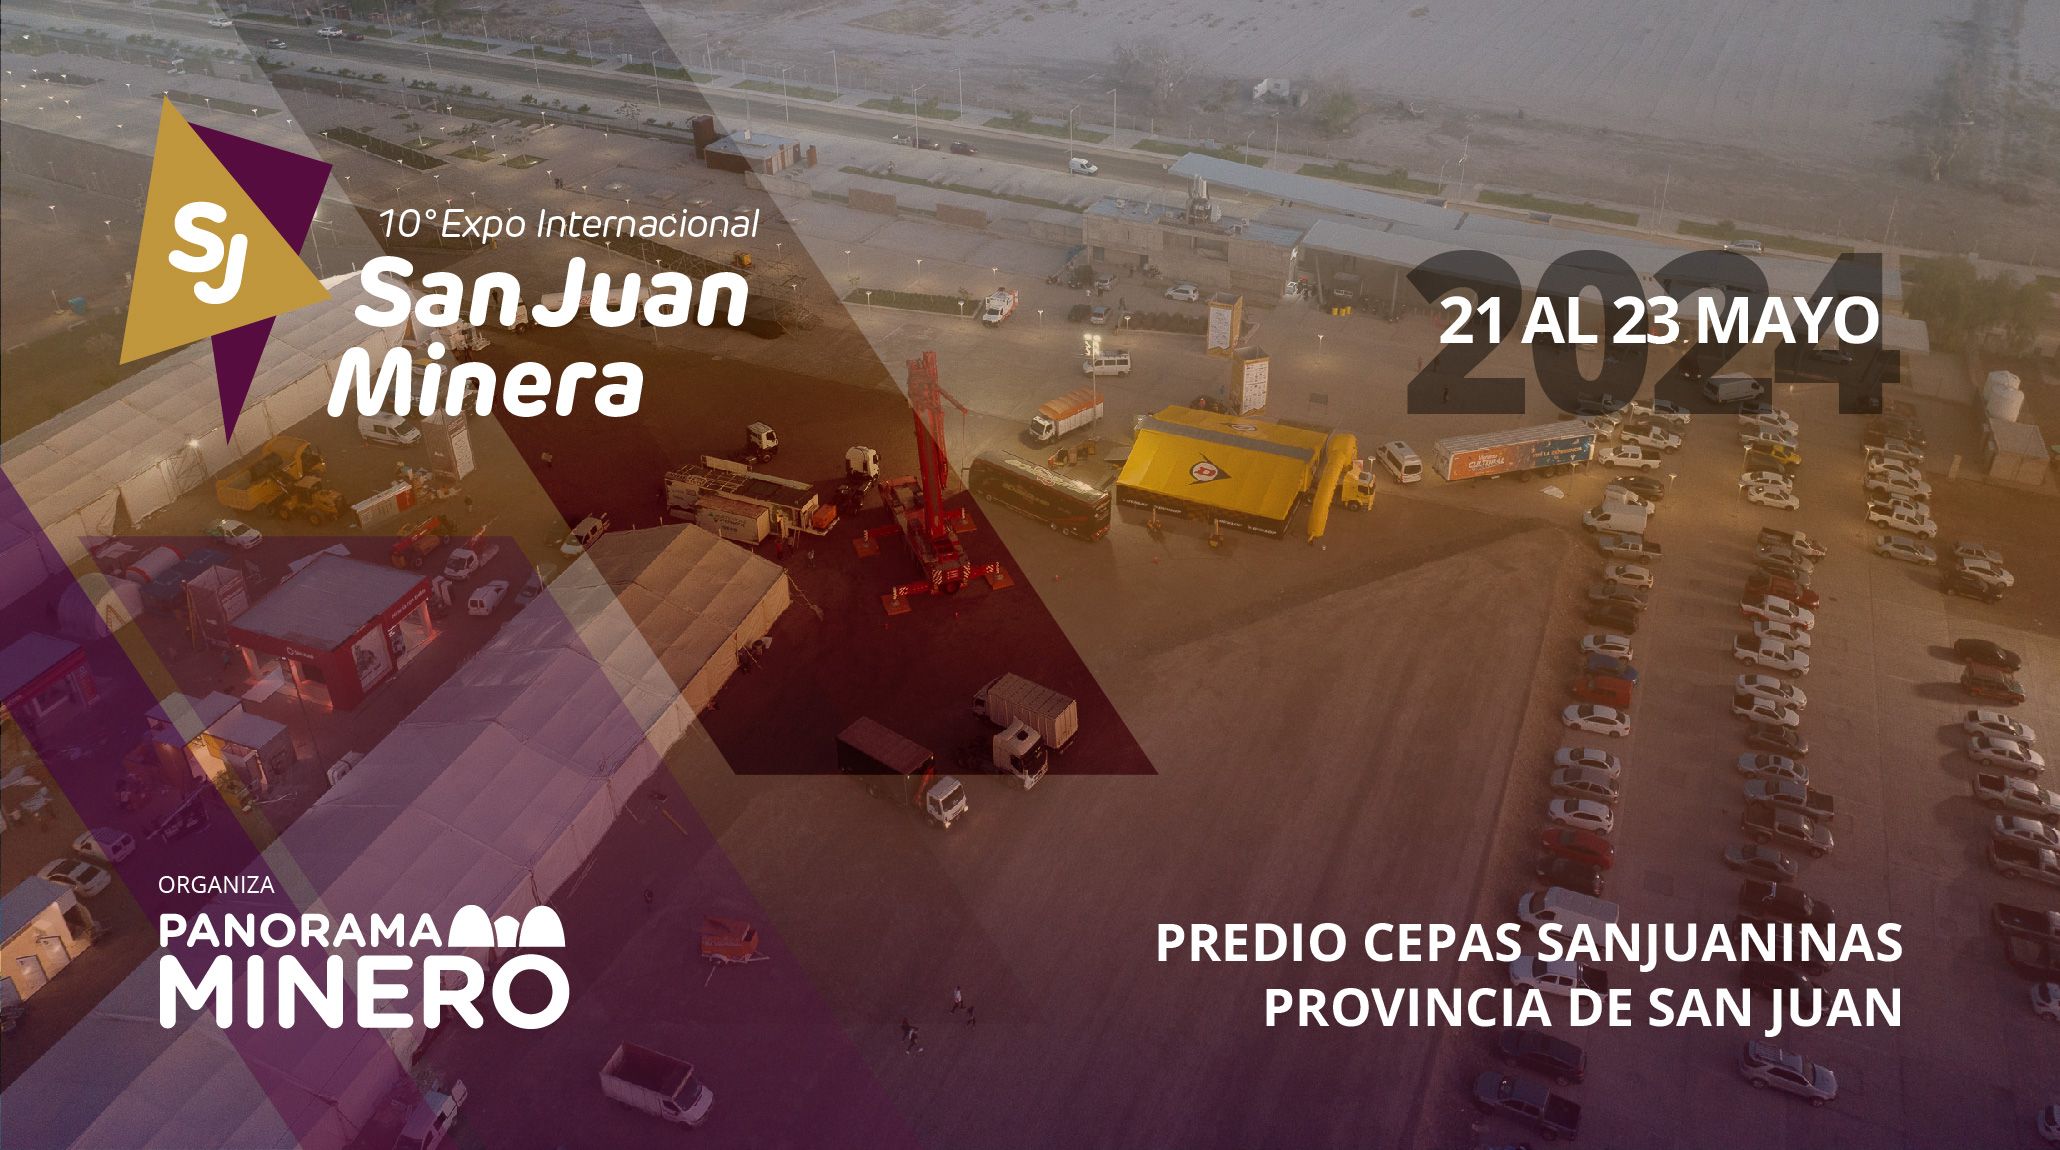 El evento minero más importante del año se realizará en San Juan del 21 al 23 de mayo